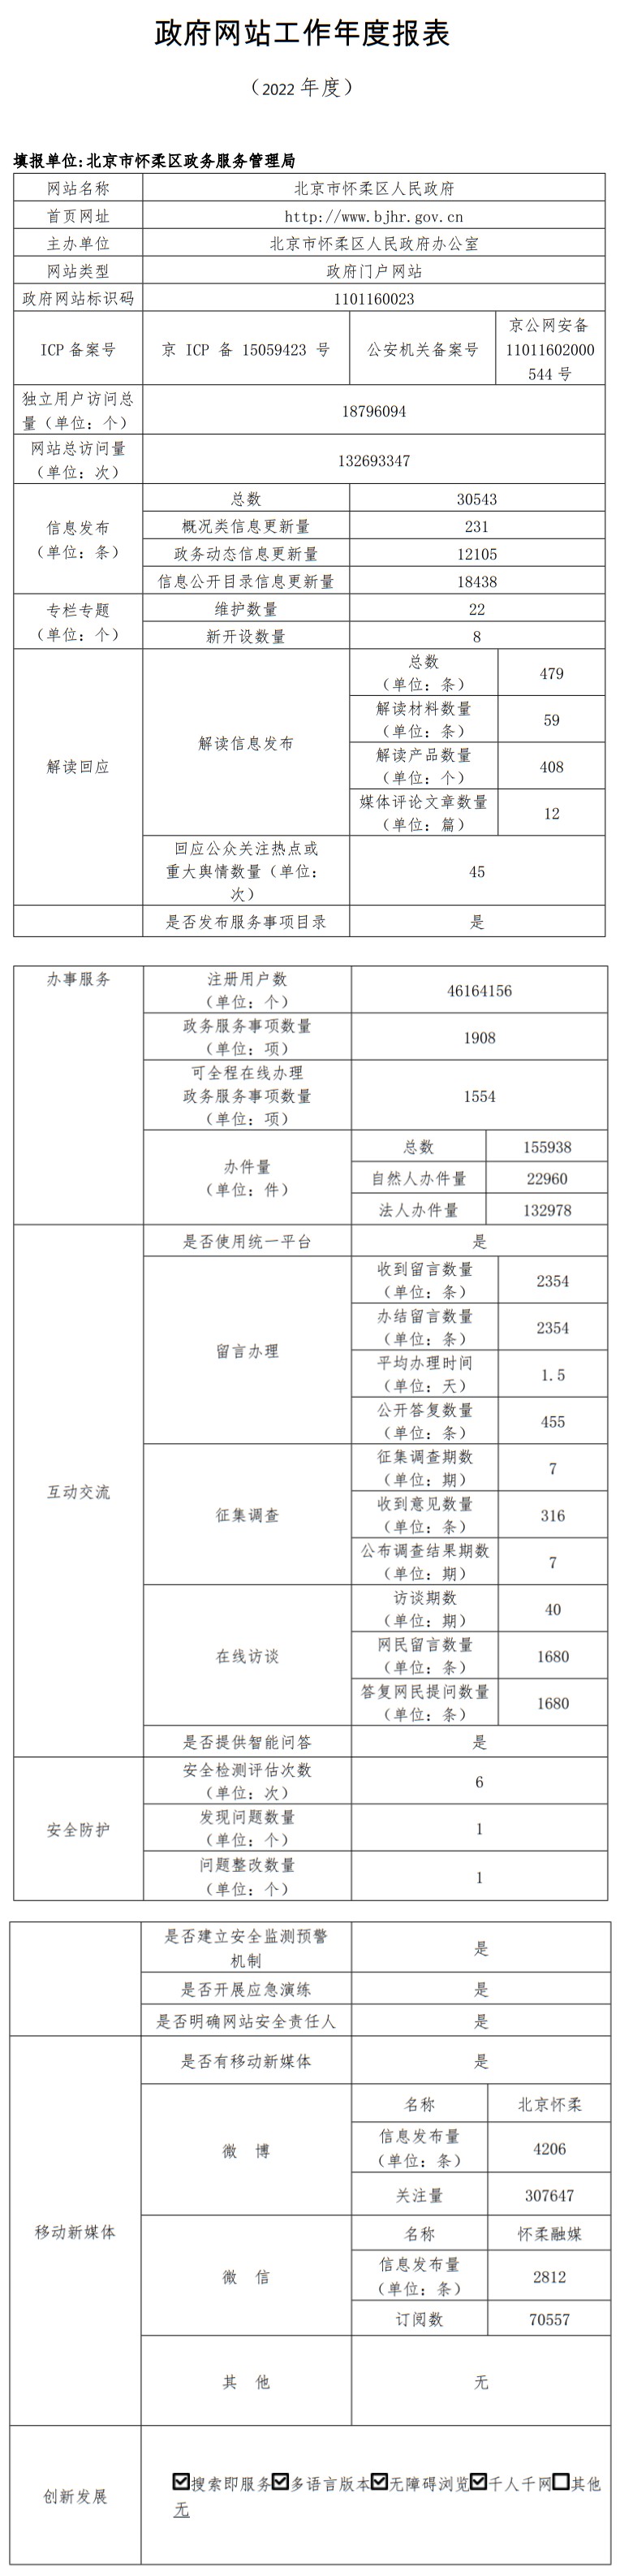 北京市懷柔區人民政府2022年政府網站年度工作報表